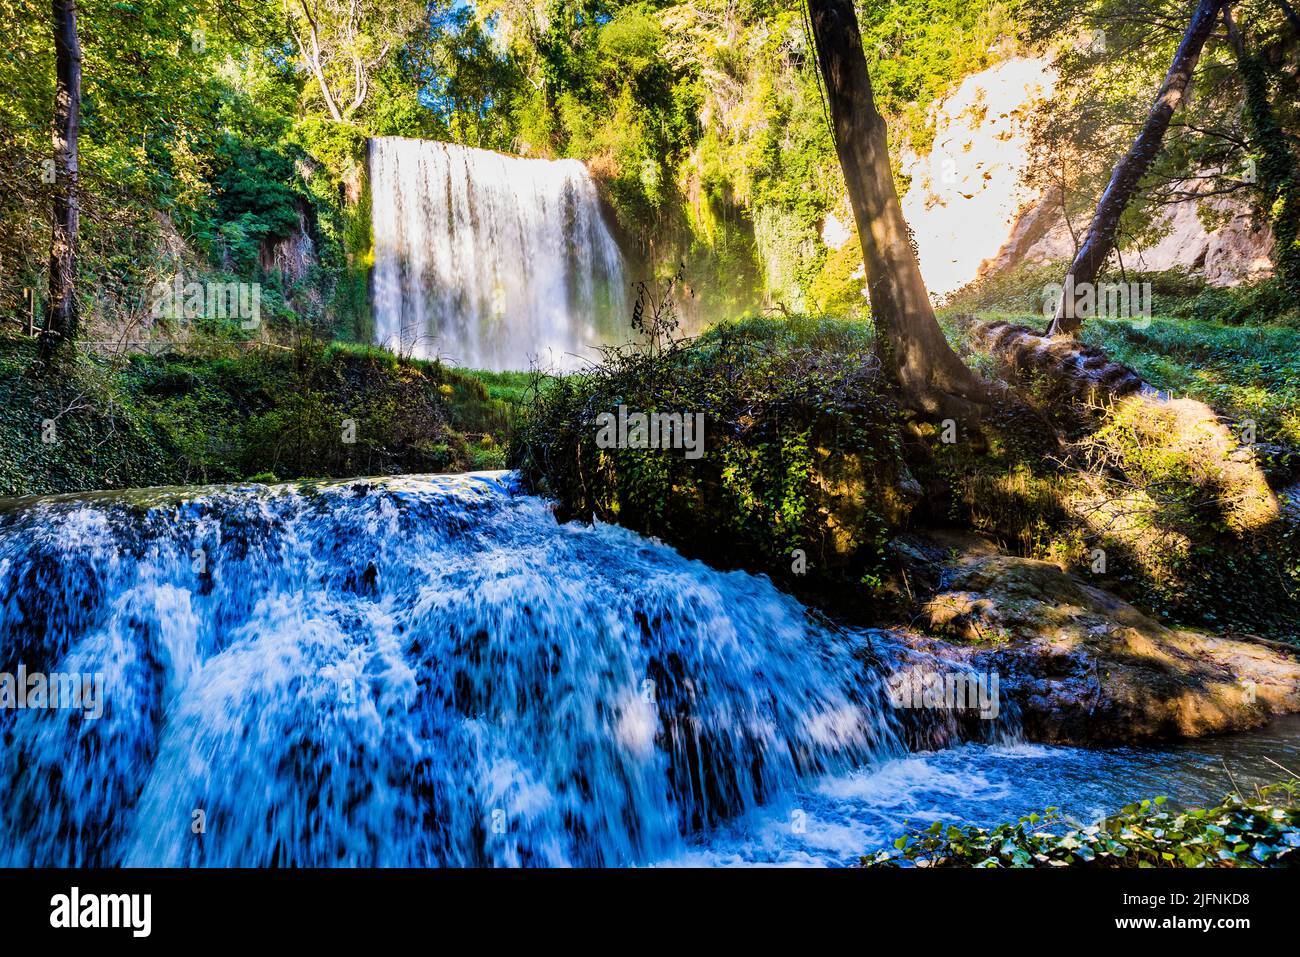 Baño de Diana cascada. Parque Natural del Monasterio de Piedra, de Nuevalos, provincia de Zaragoza, Aragón, España Fotografía de stock - Alamy